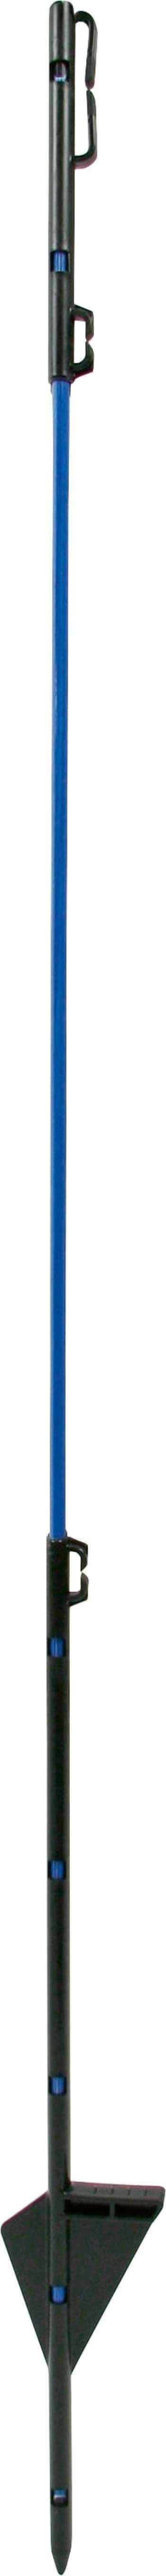 Glasfiberstolpe Kerbl till vildsvinsnät Blå 90cm